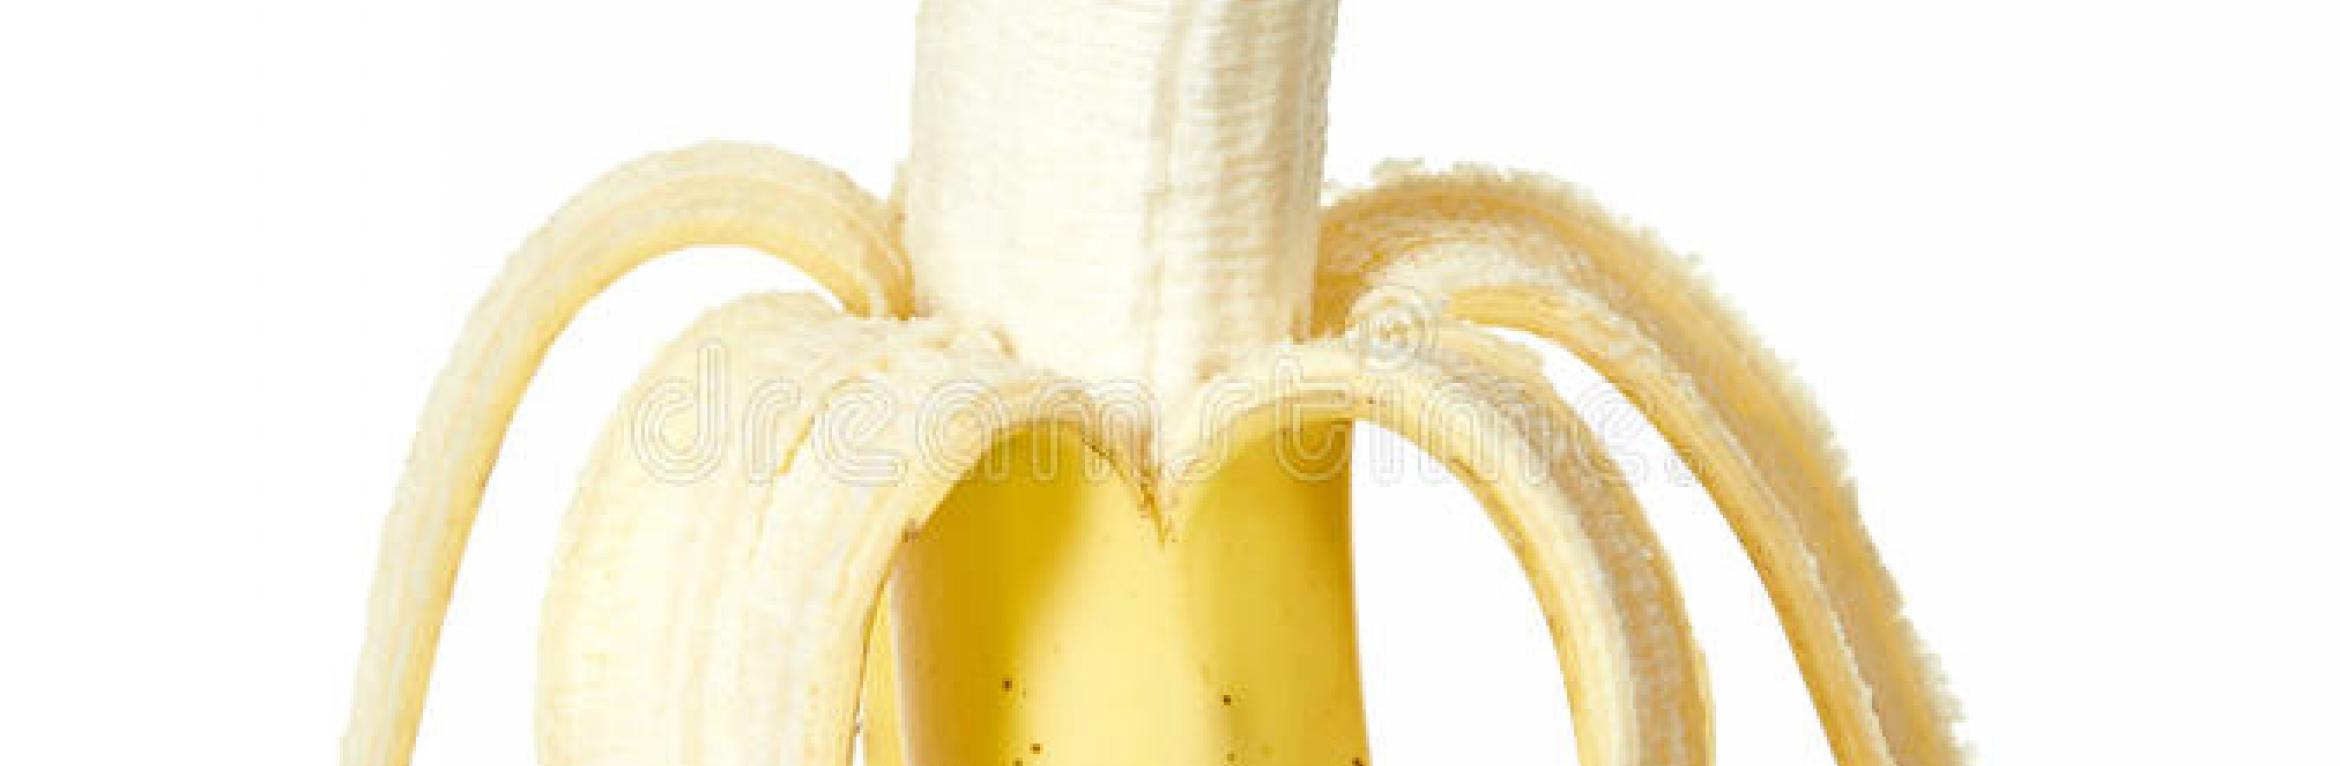 Les vitamines de la banane